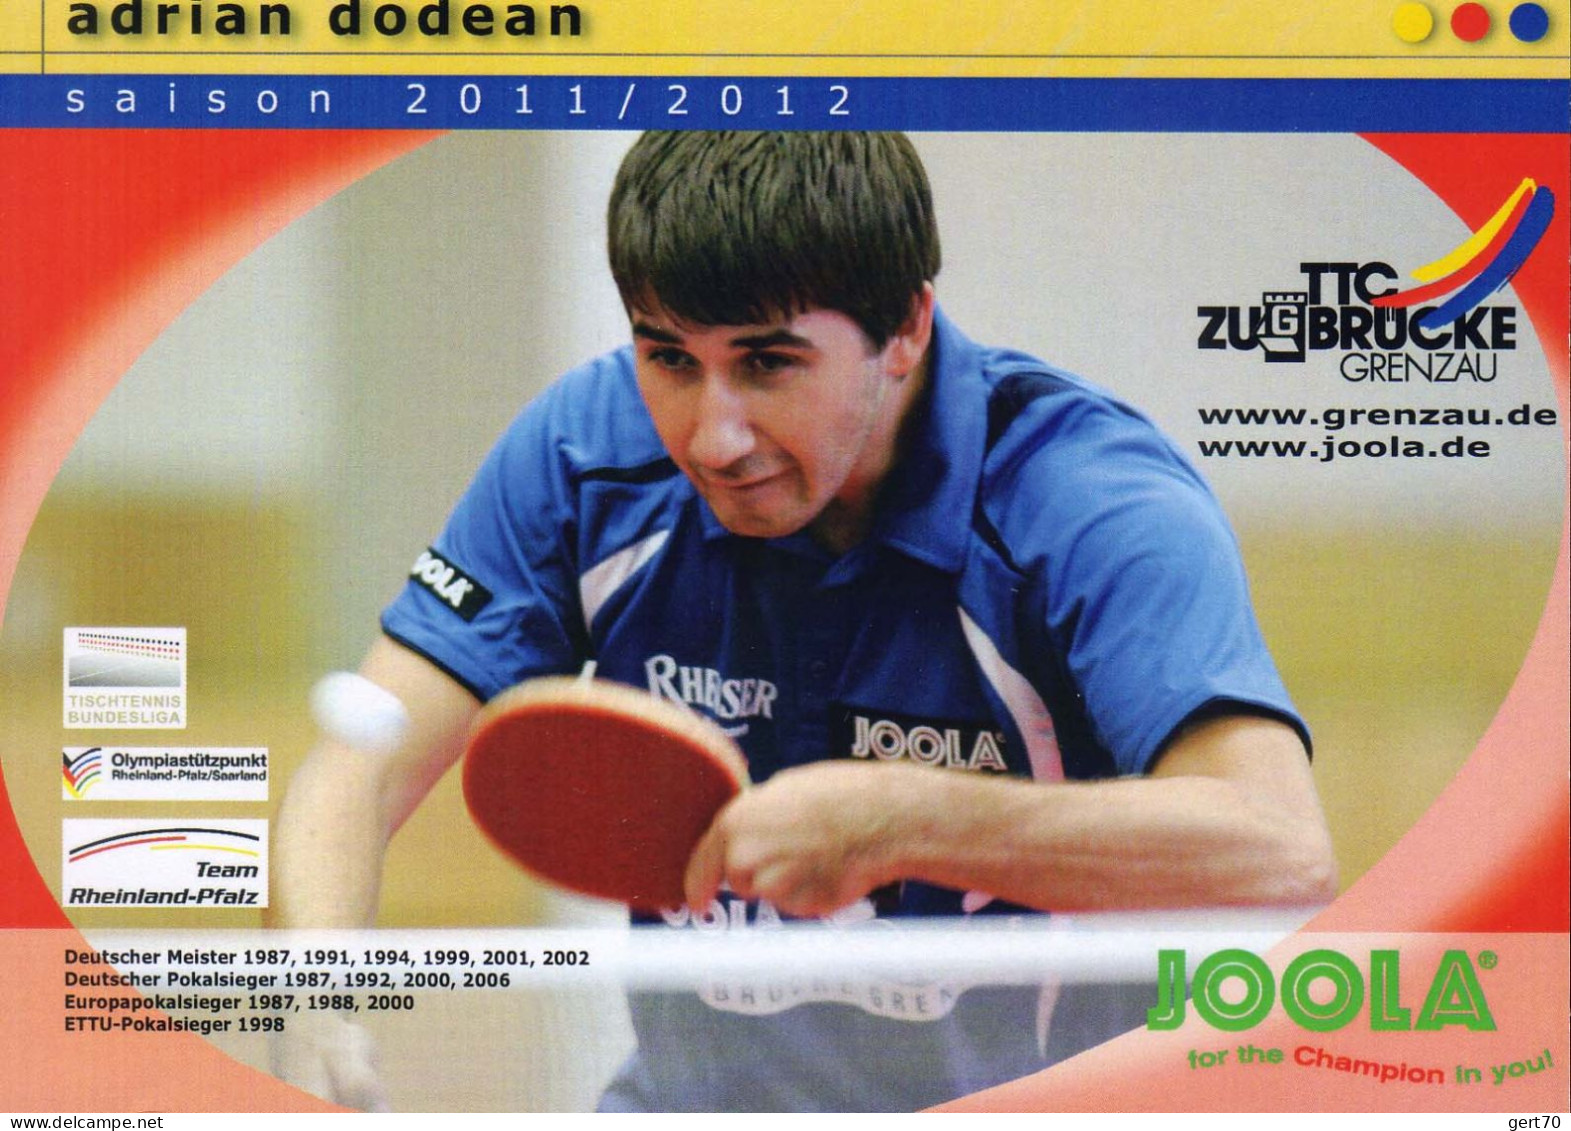 Romania / Roumanie 2012, Adrian Dodean - Tennis De Table